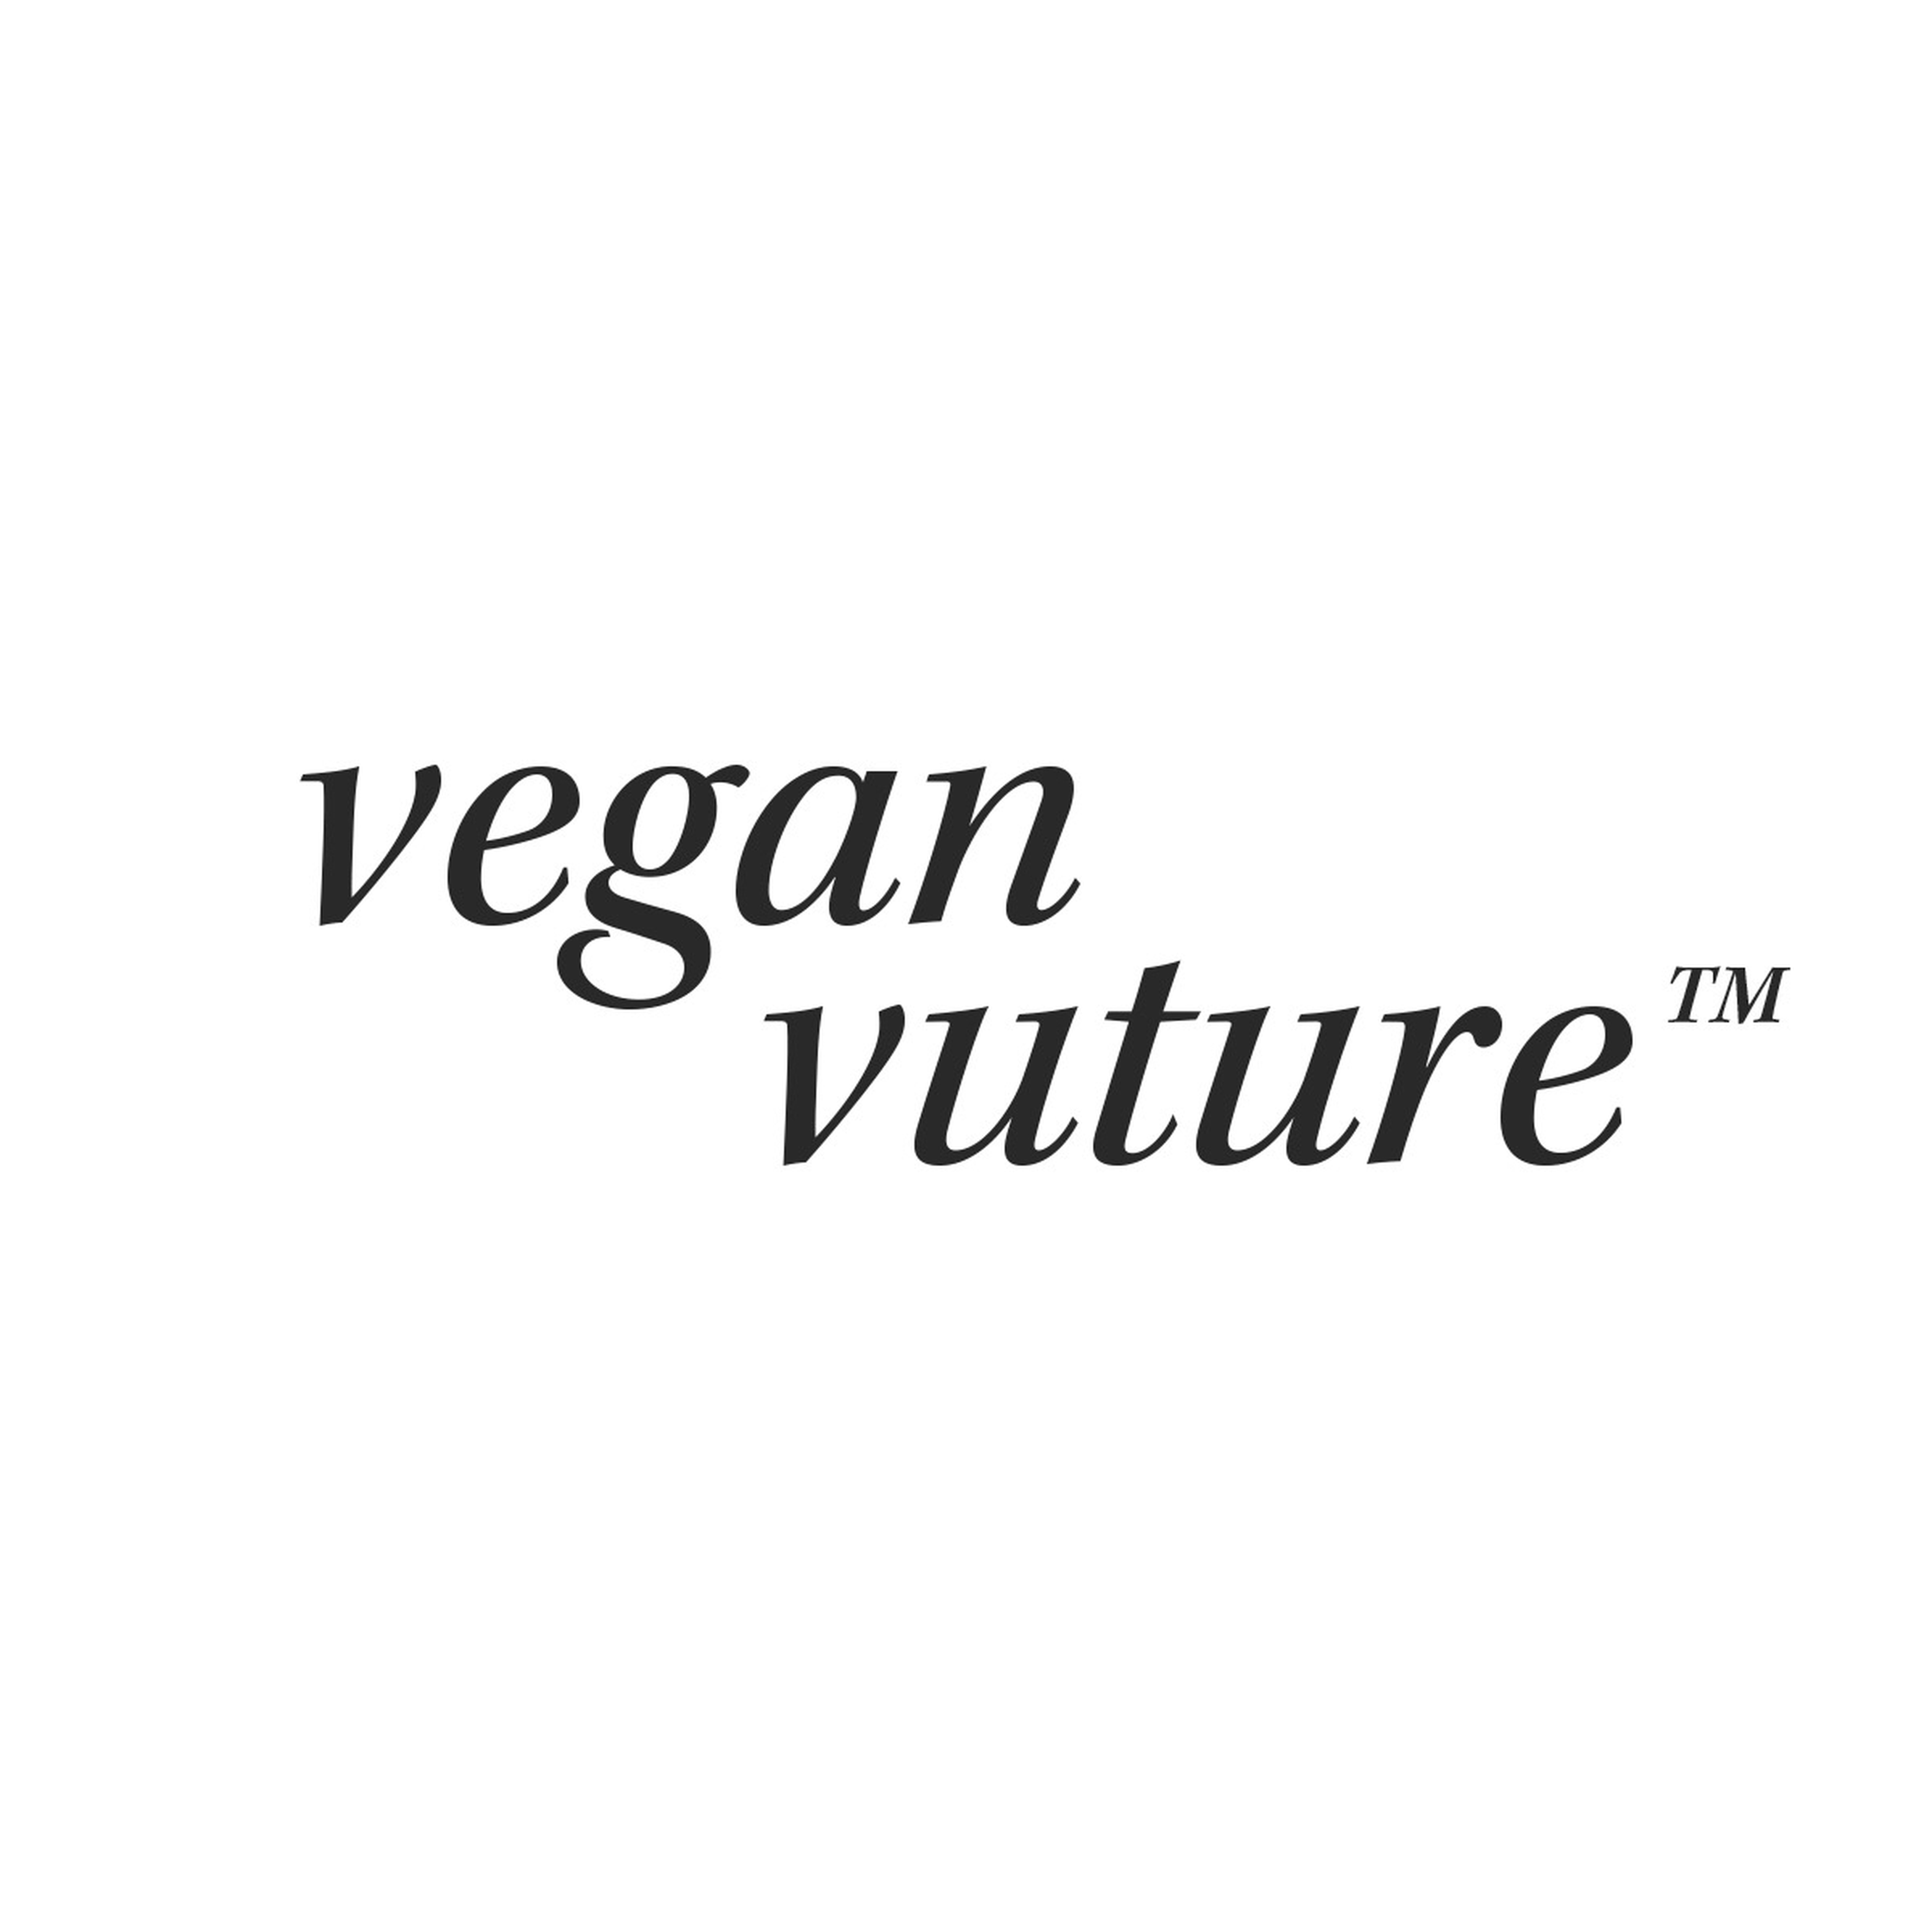 vegan vuture 🌱